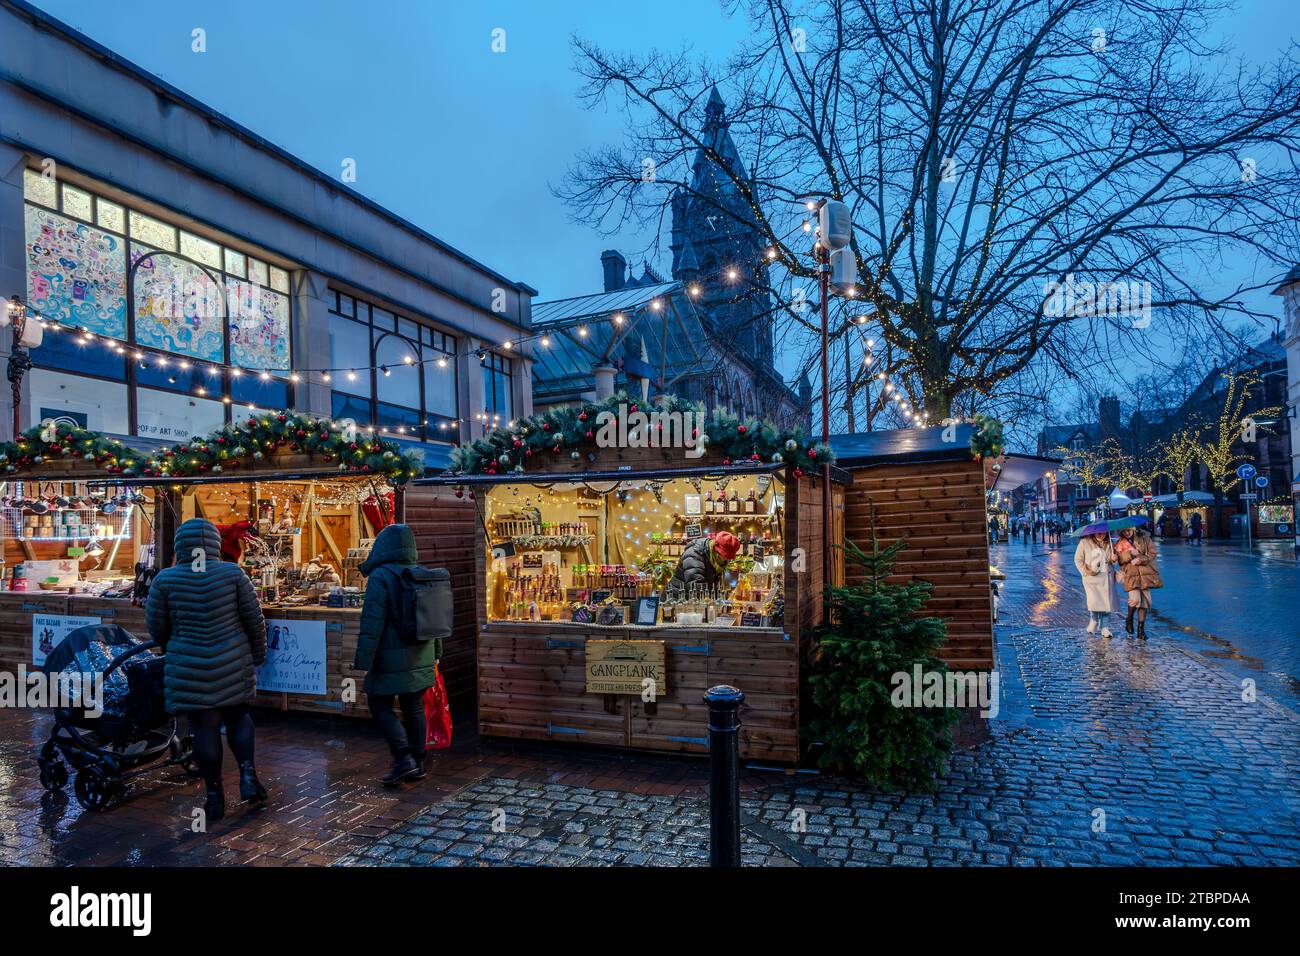 El mercado de Navidad frente al ayuntamiento de Chester parece bastante sombrío bajo la lluvia. Foto de stock